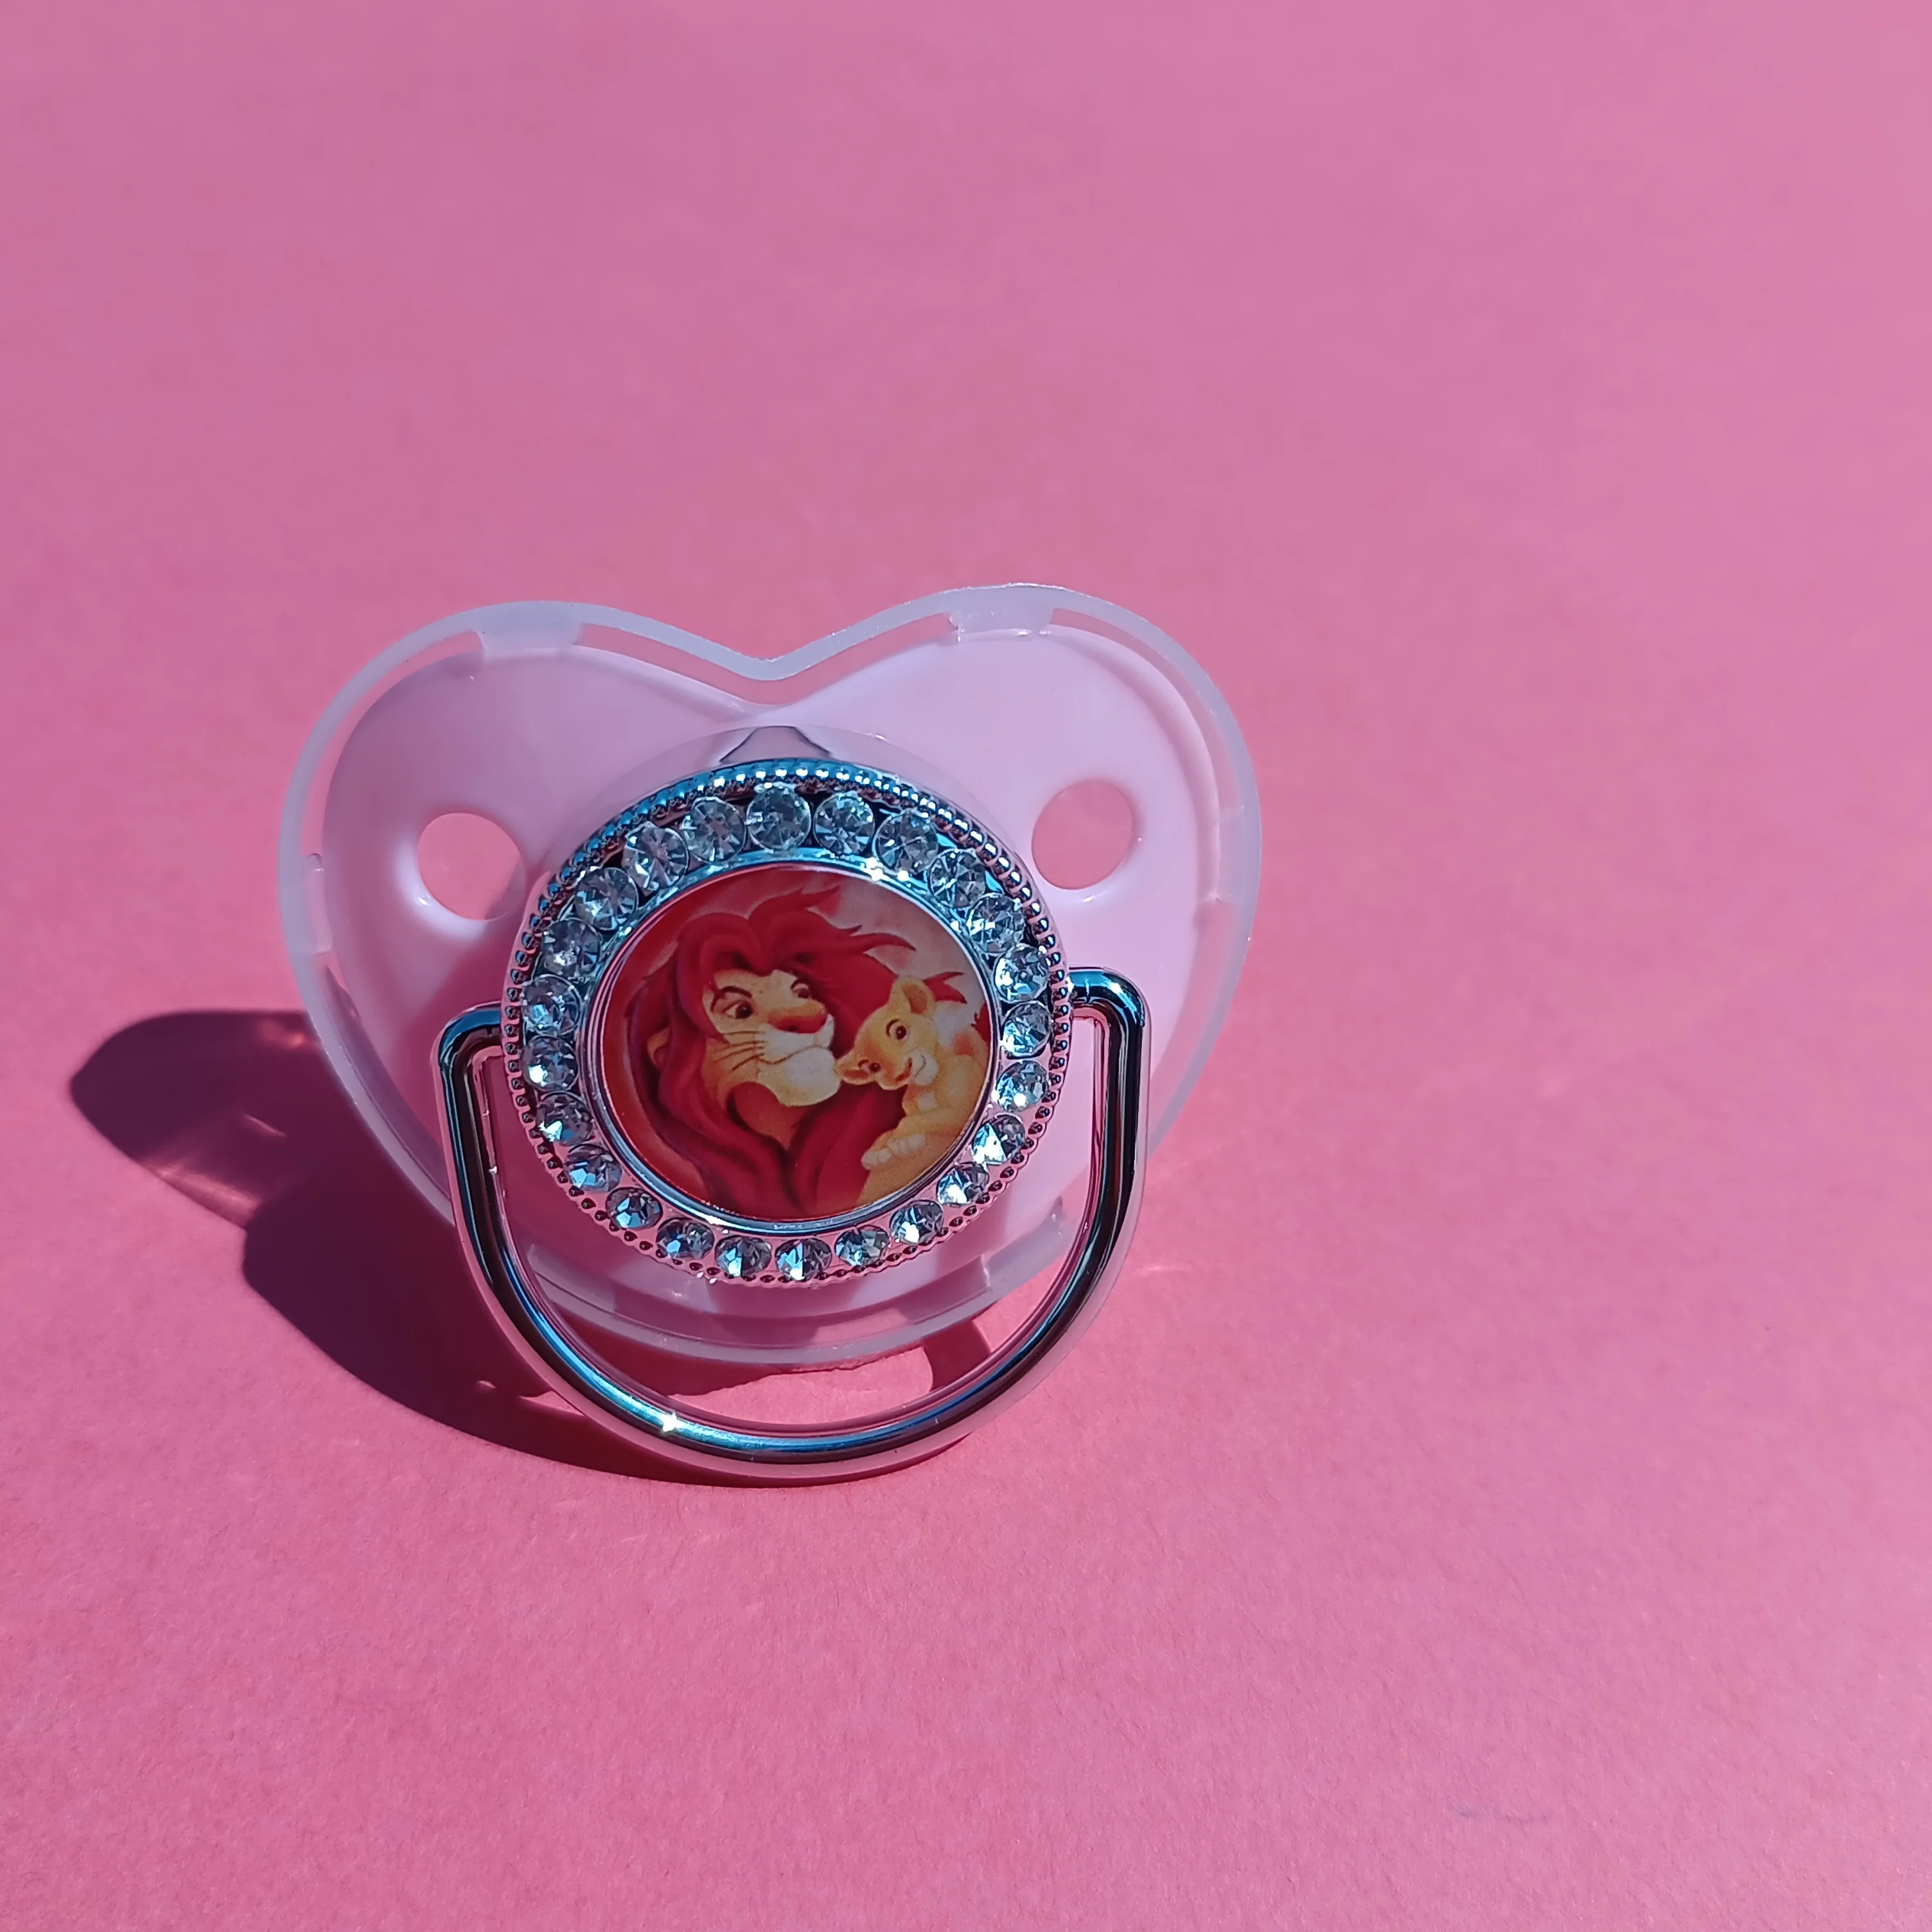 Mickey myš & kopretina kreslený korále dudlík klipů držák kojenec BPA svobodné jídlo grade silikon žvýkací plochý soother bradavek péče